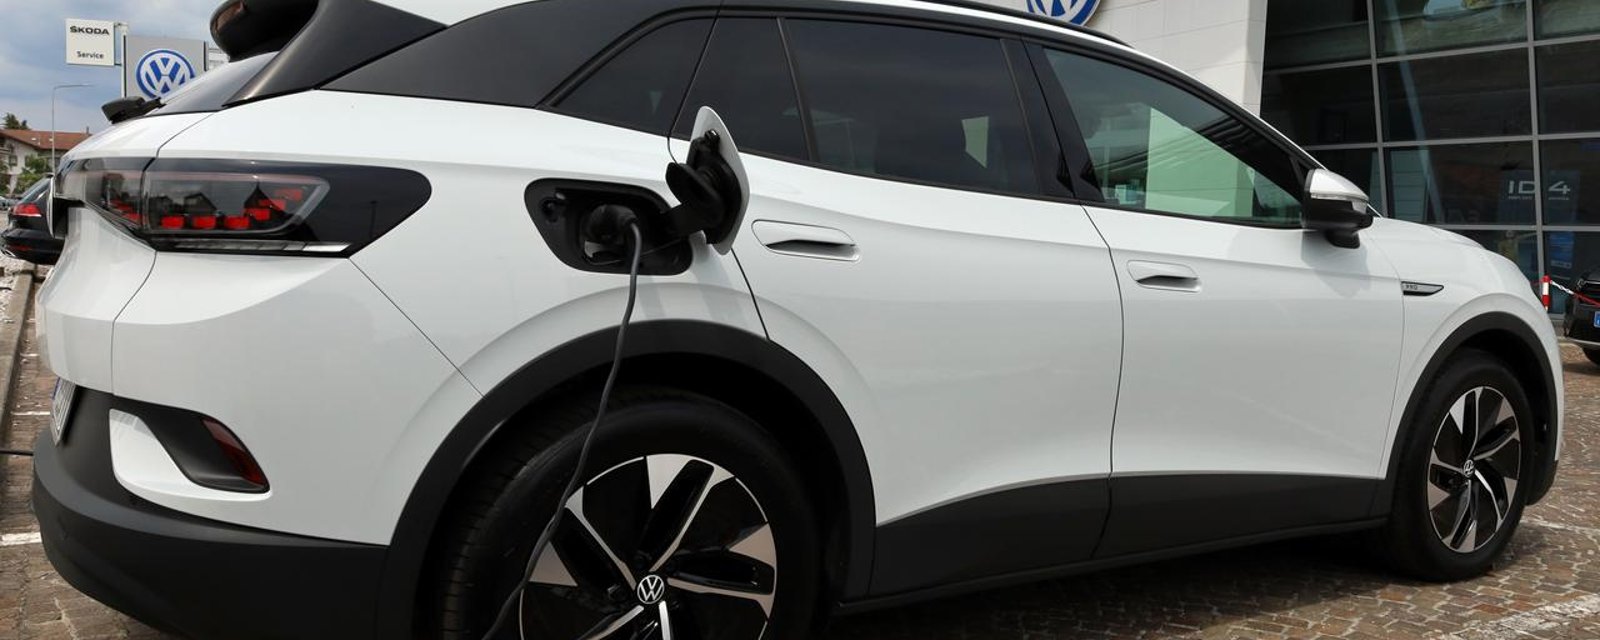 Une étude démontre que les voitures électriques seraient moins fiables que les voitures à essence.